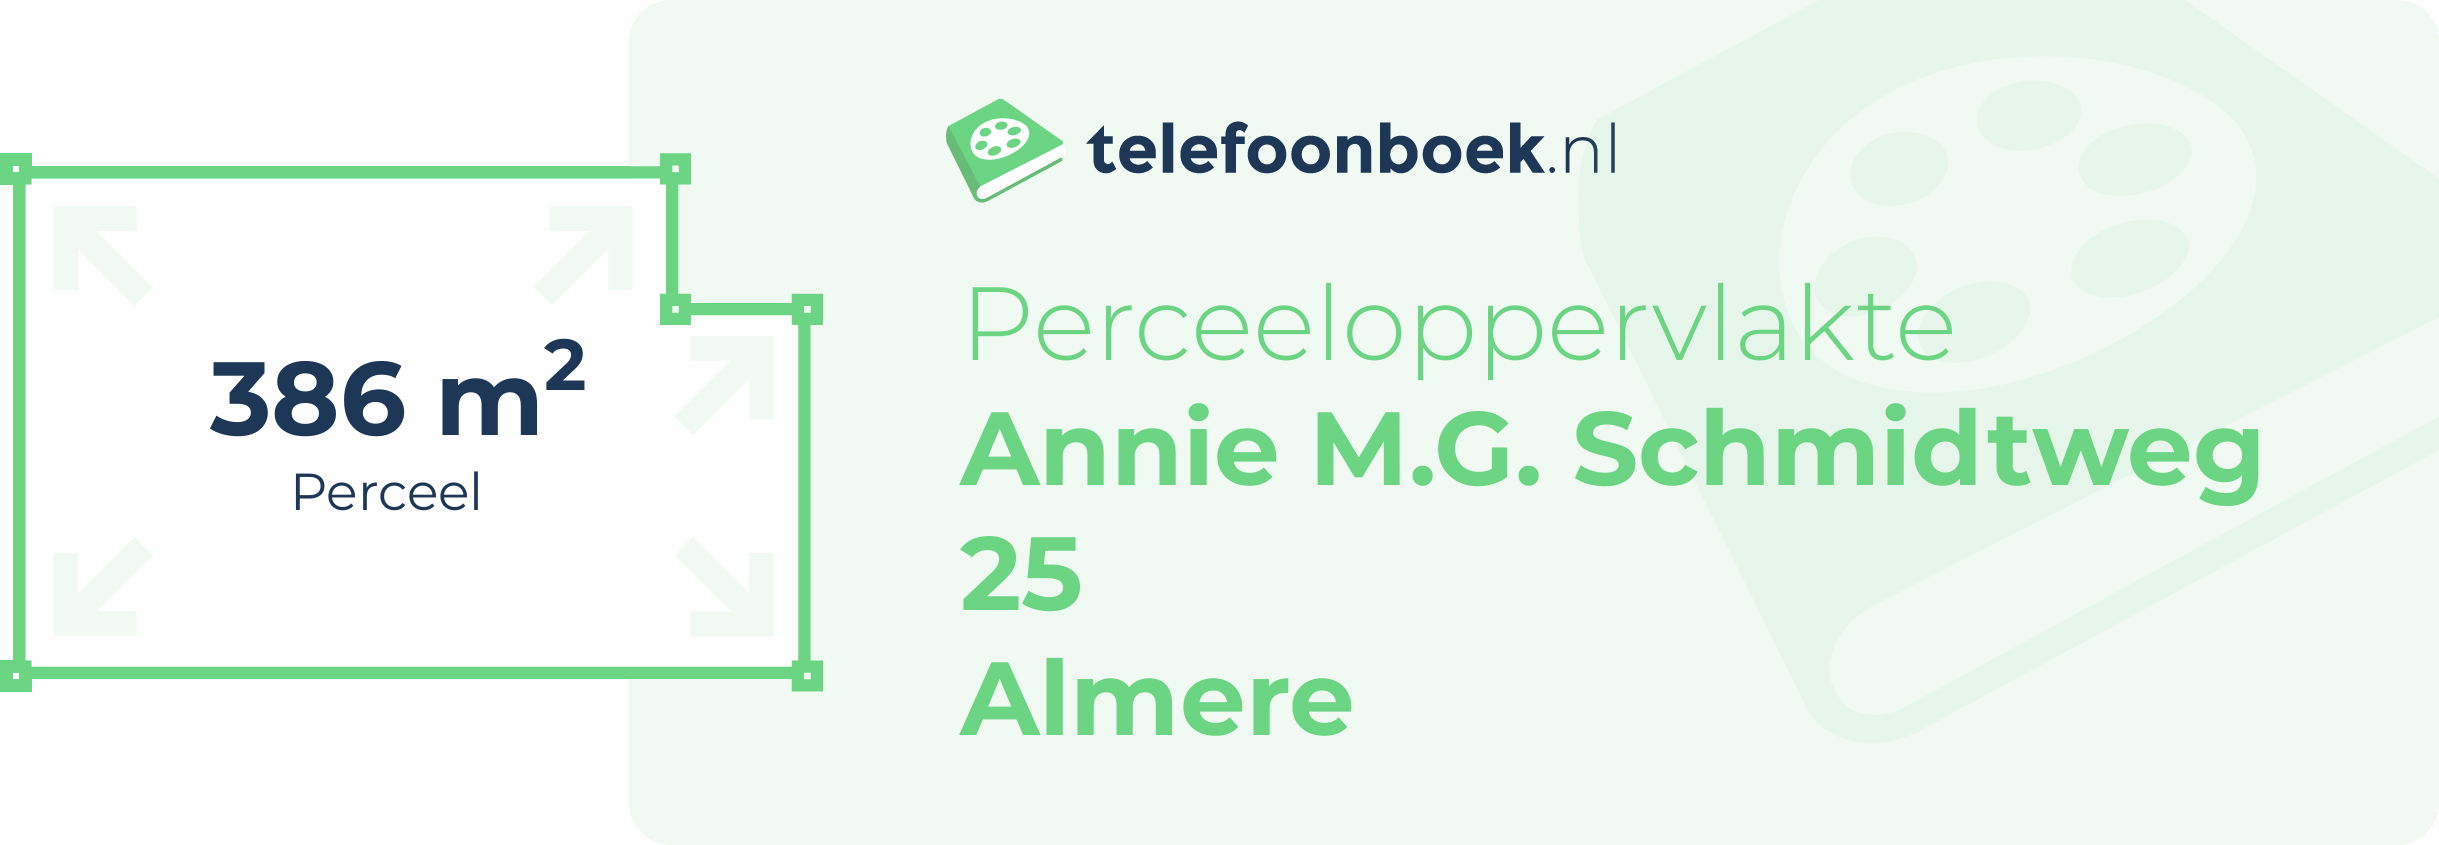 Perceeloppervlakte Annie M.G. Schmidtweg 25 Almere